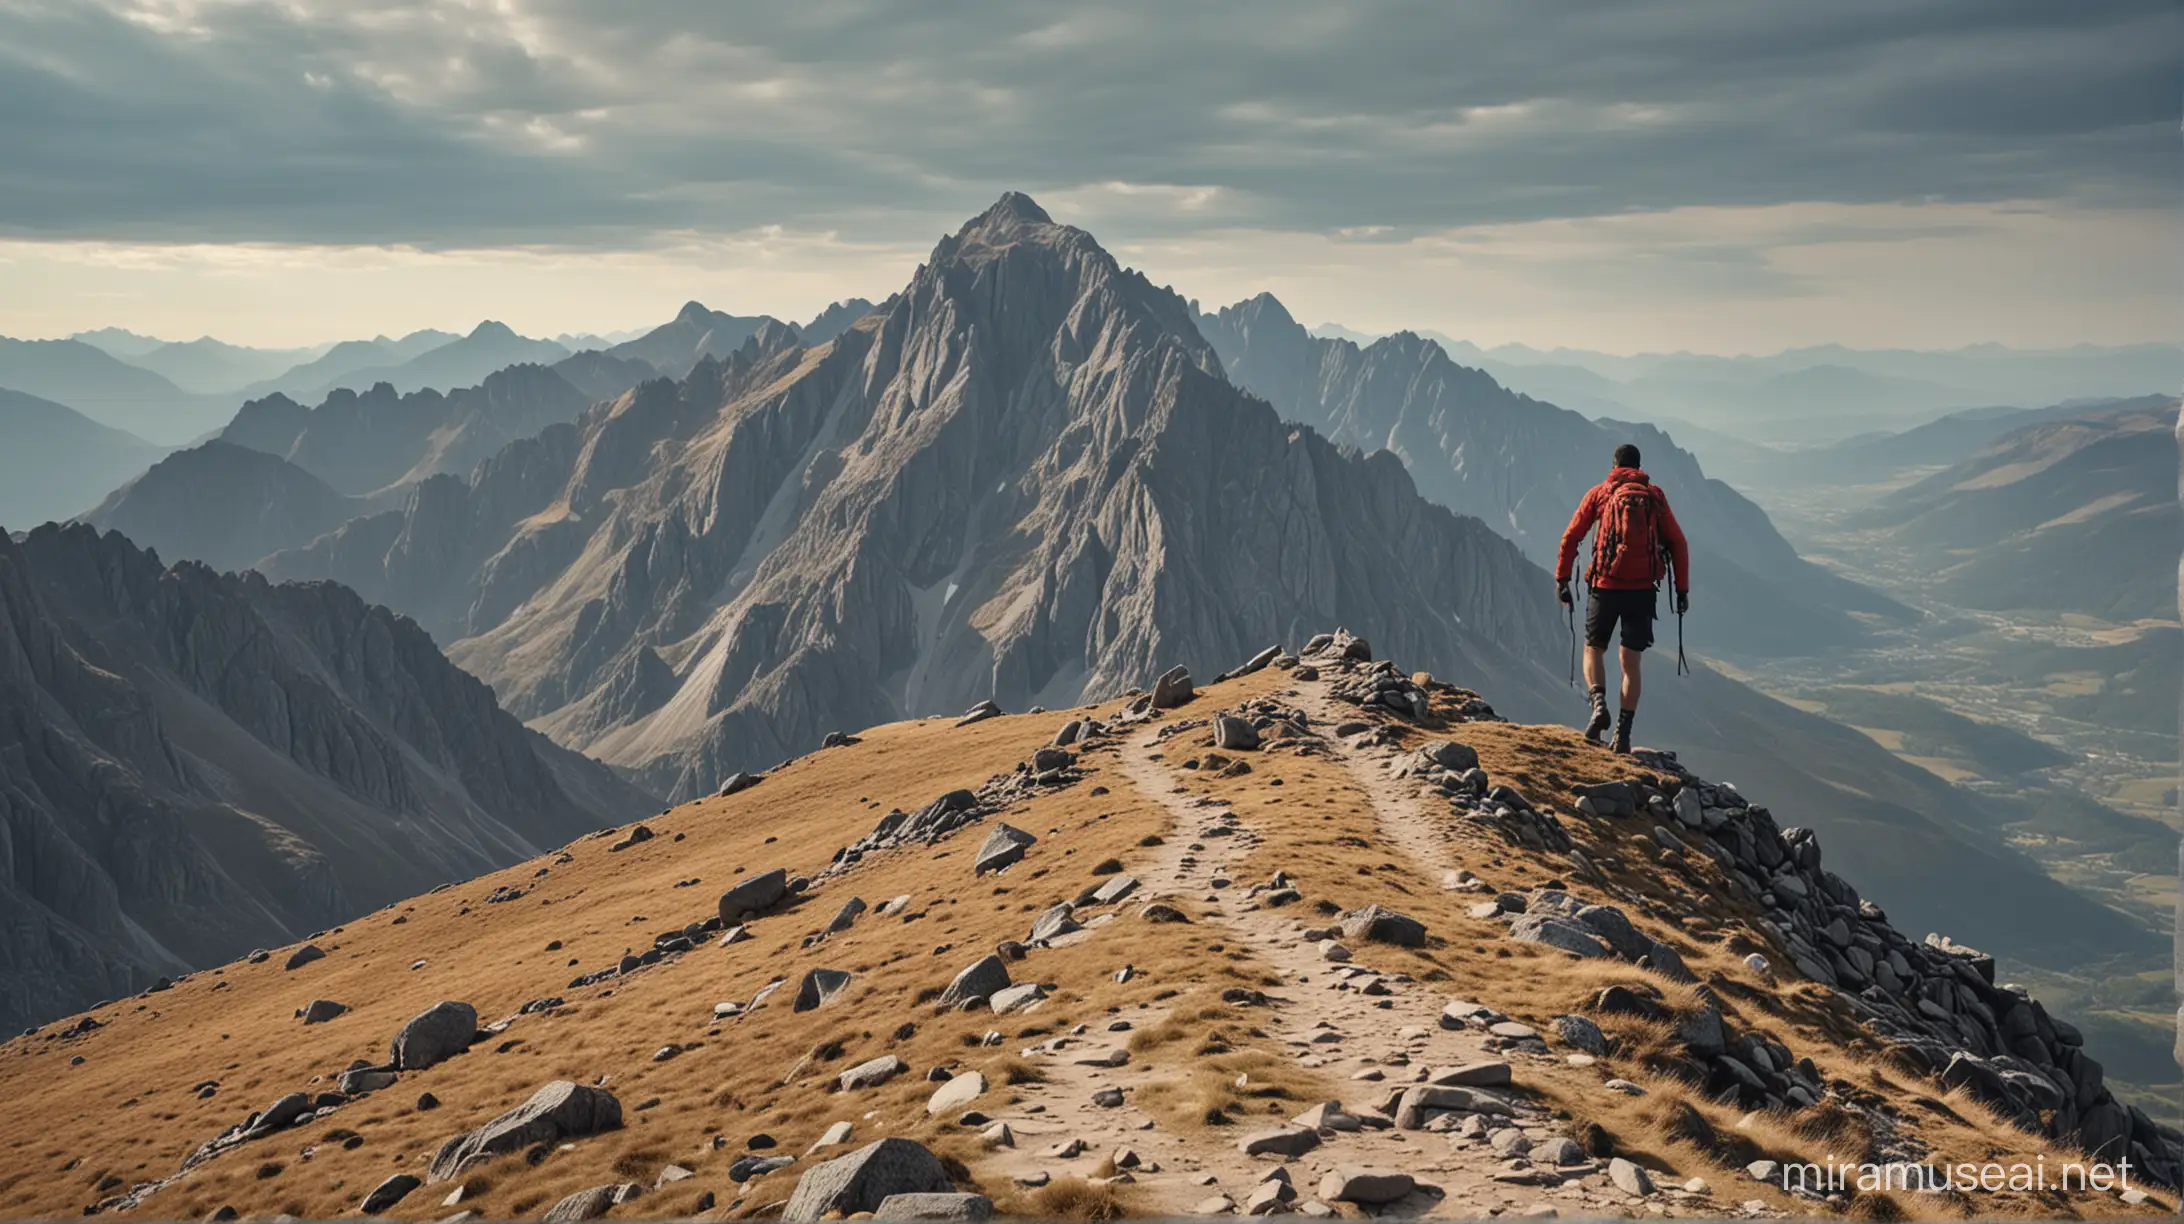 Adventurous Mountain Climber Reaches Summit in Stunning 8K UHD View